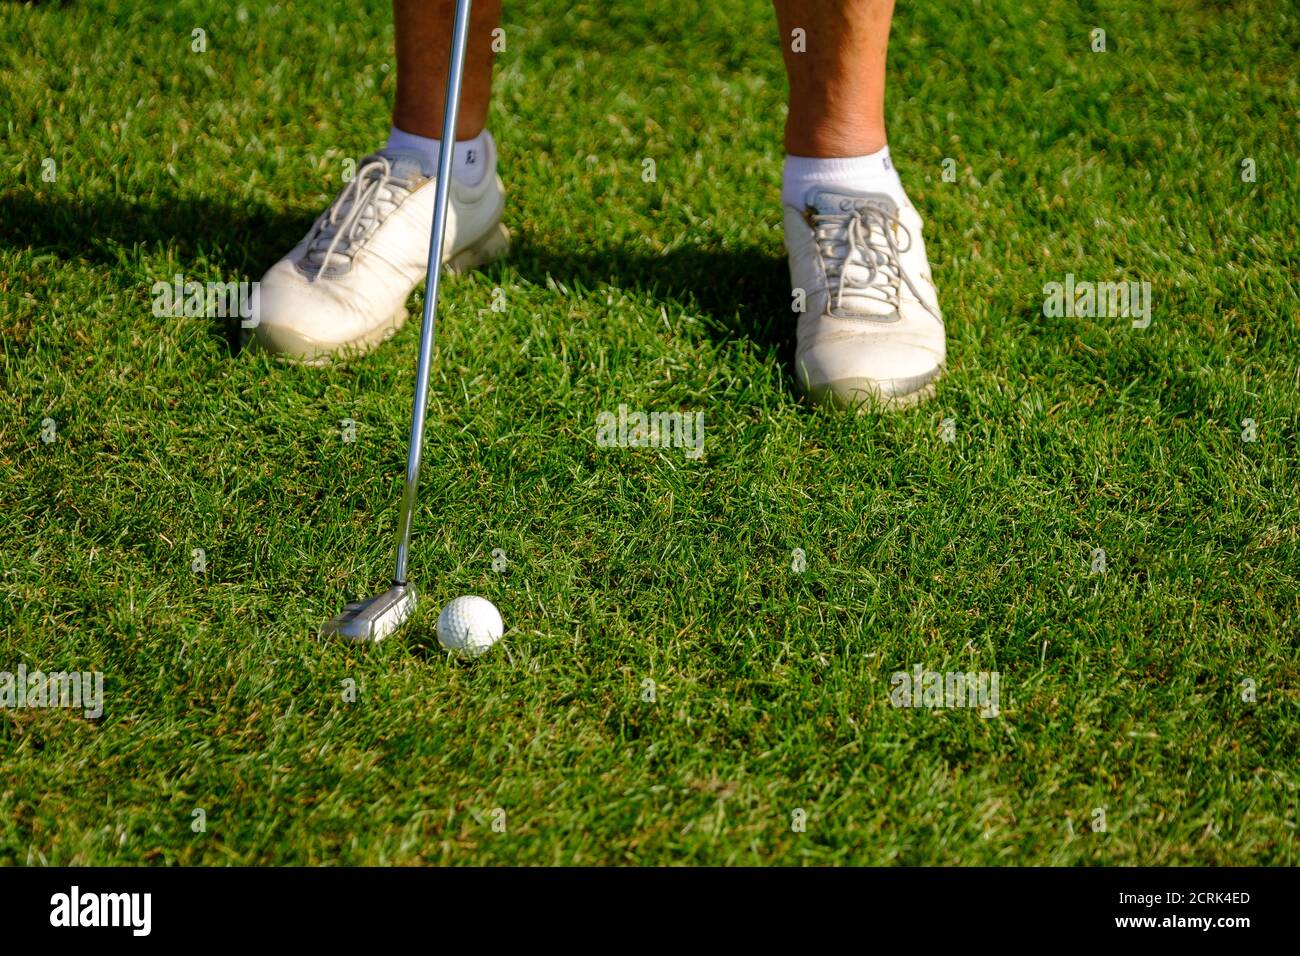 Füße der weiblichen Golfspielerin in weißen Schuhen, die Golf spielen Kurs Stockfoto